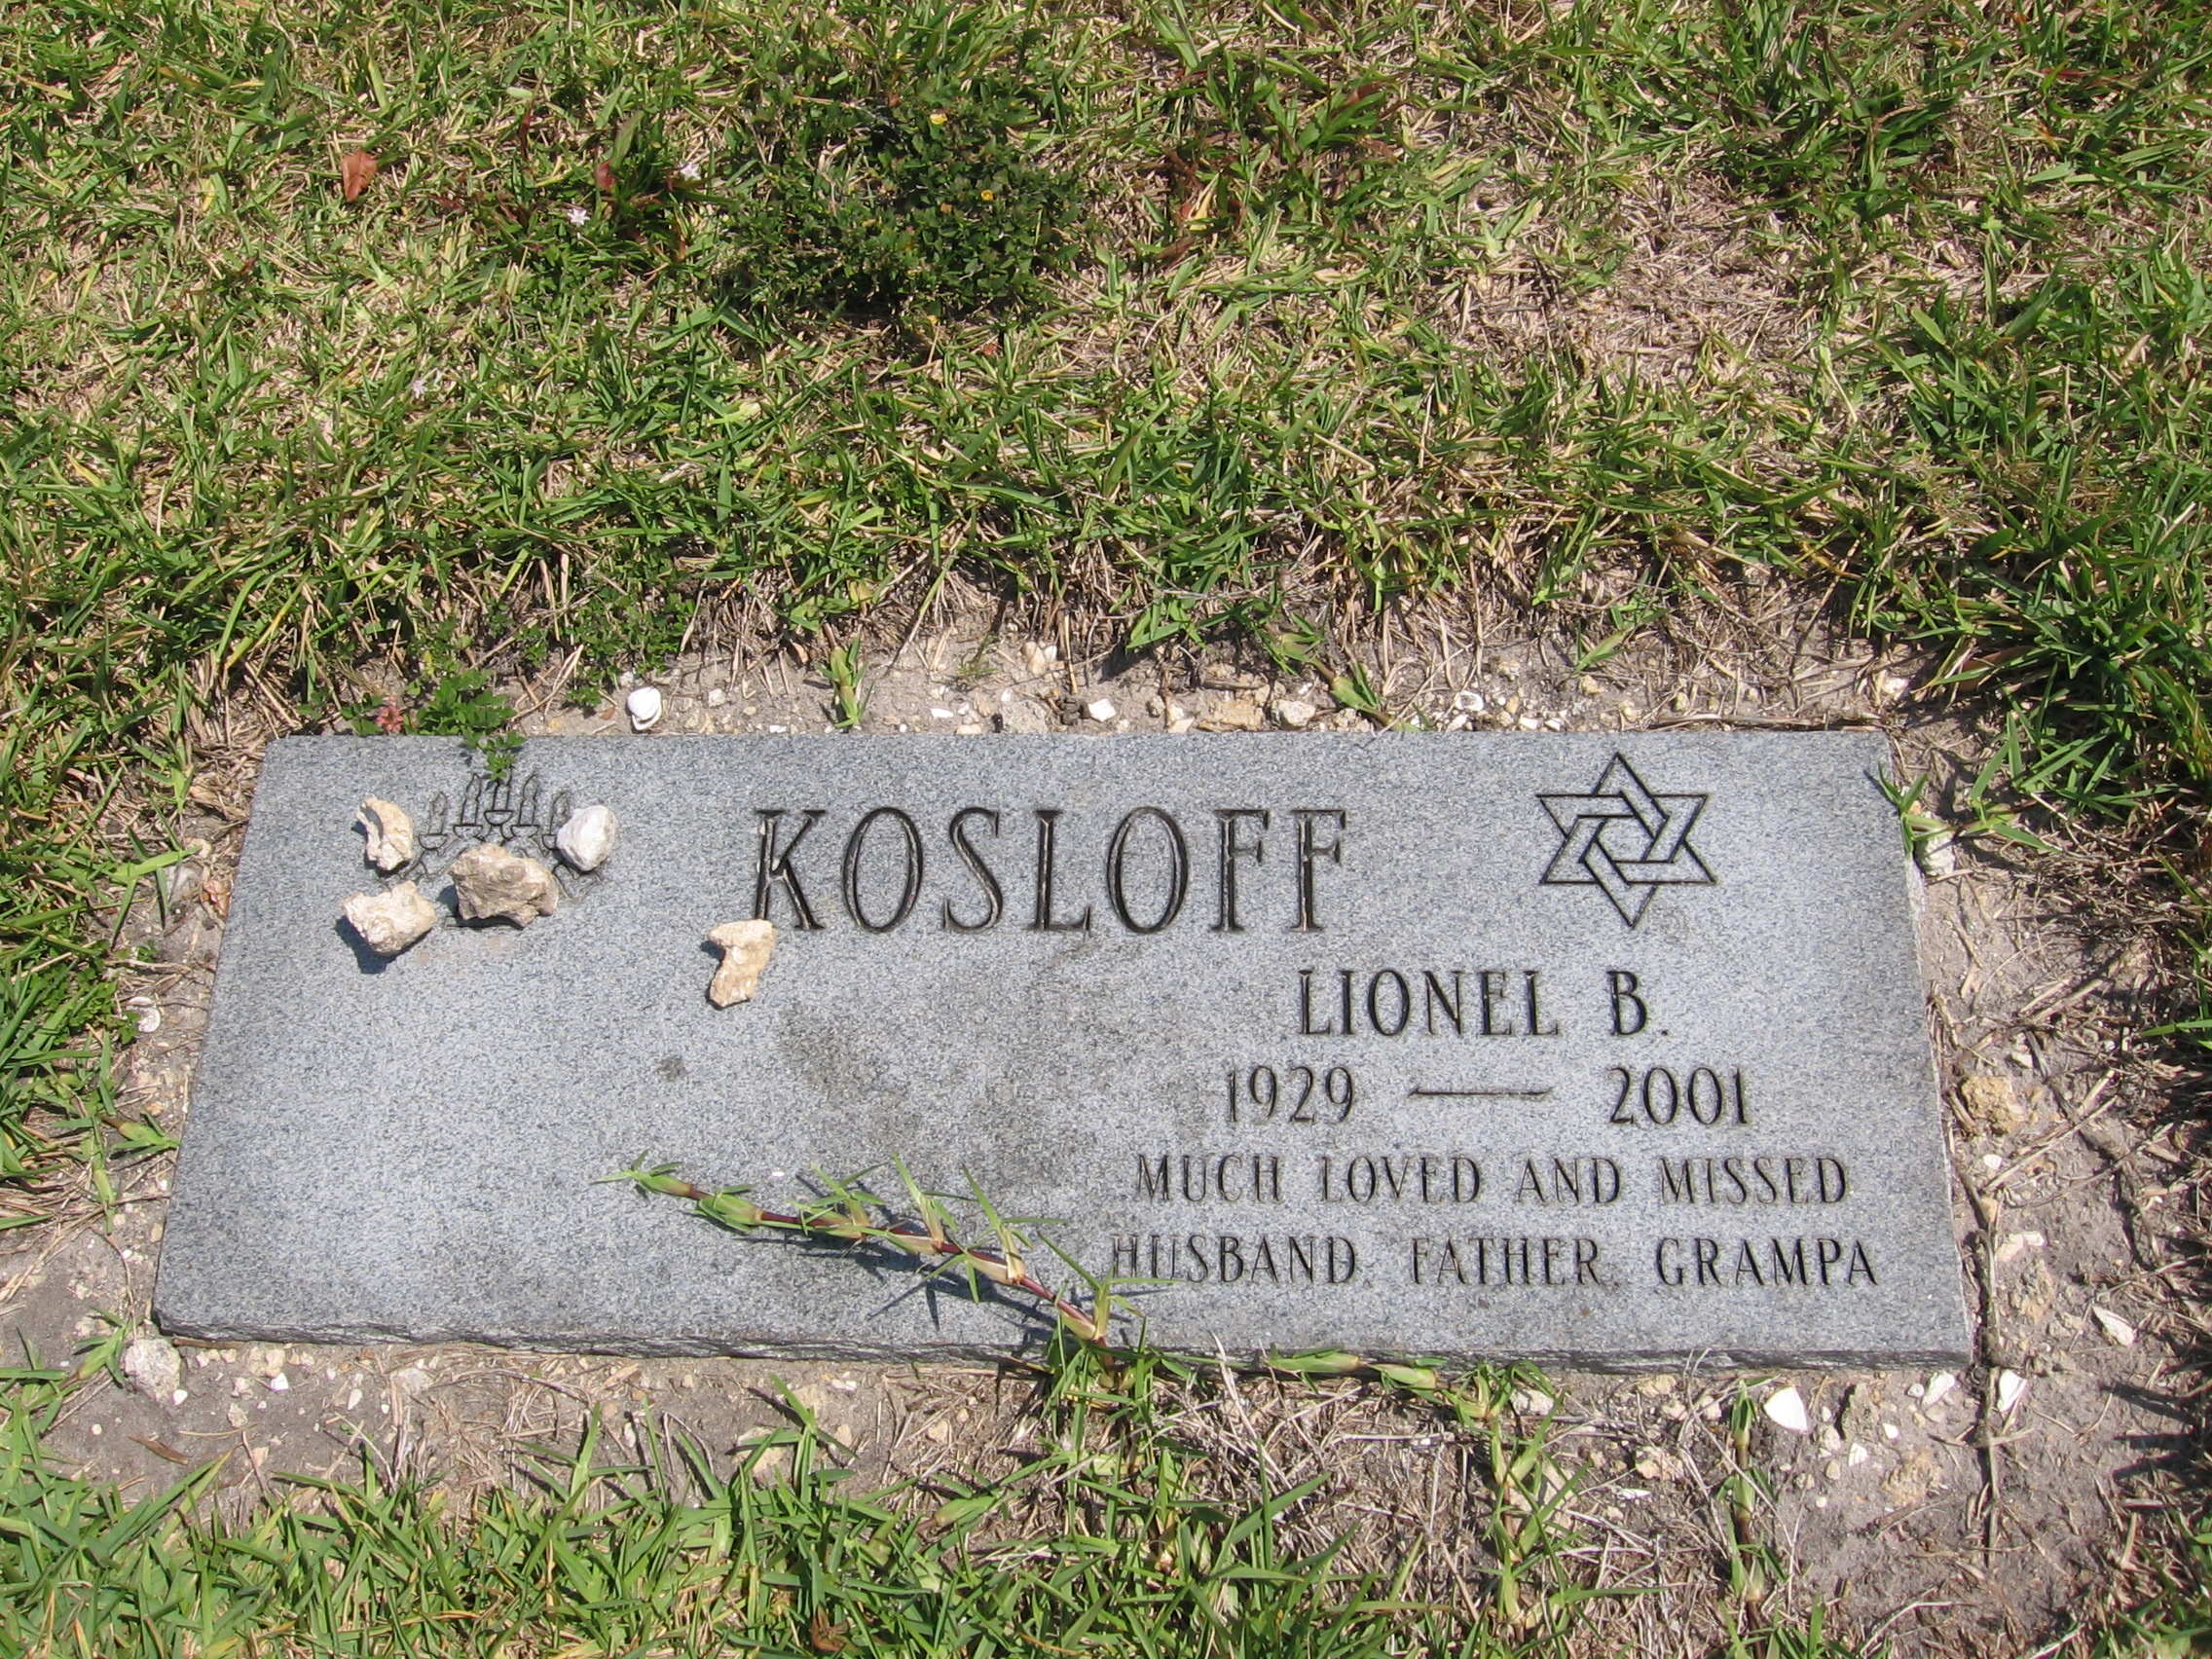 Lionel B Kosloff